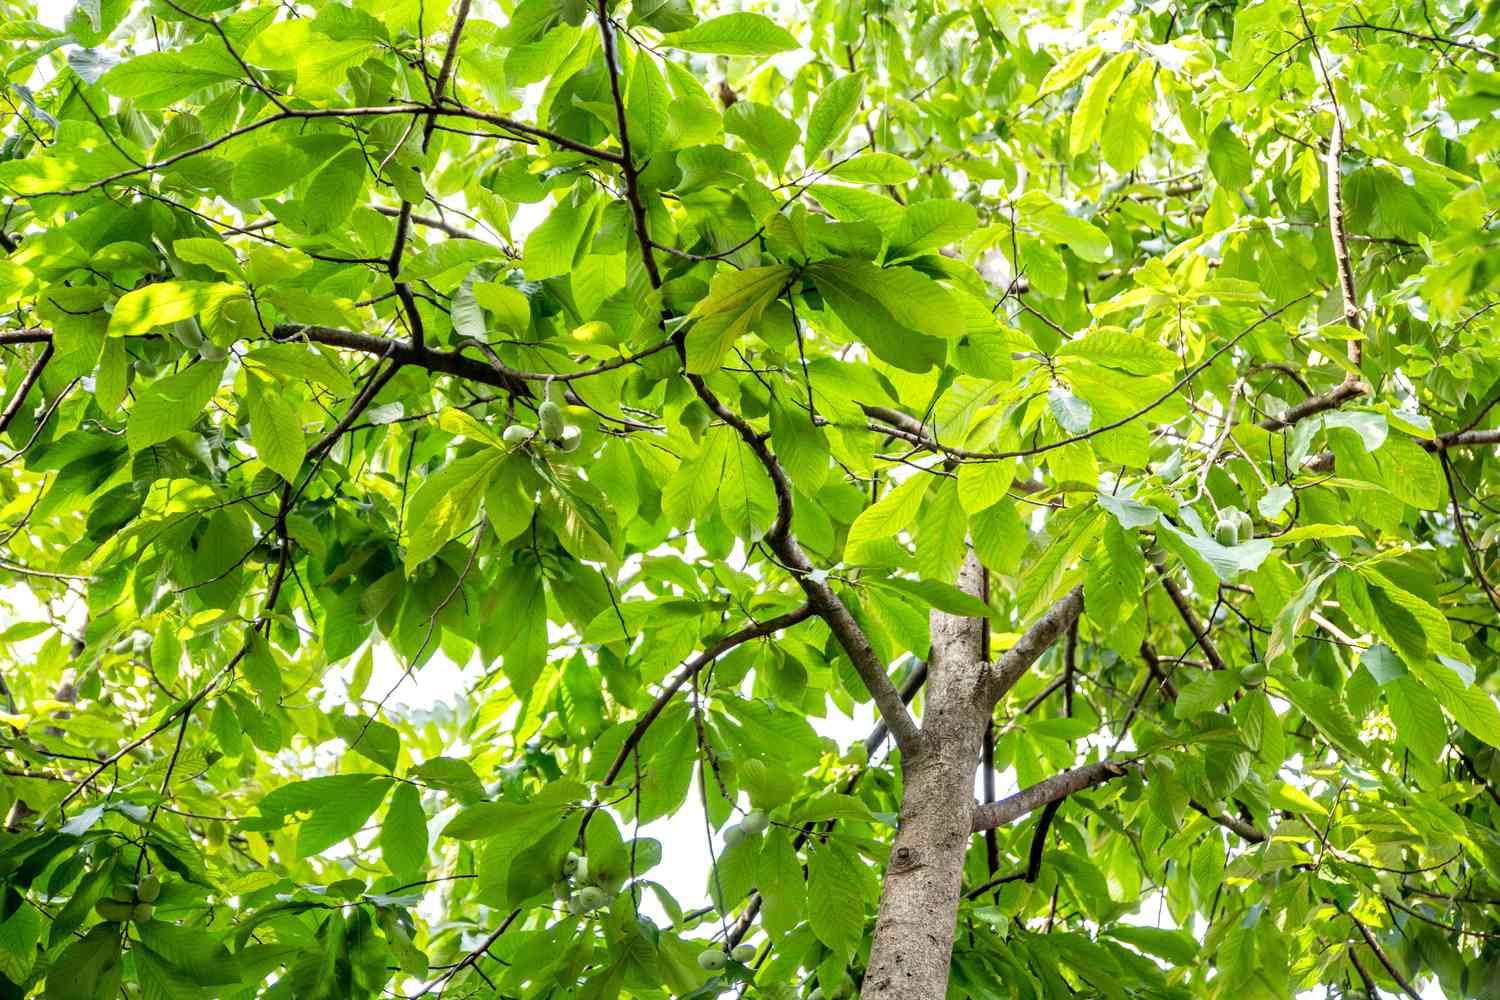 Papayabaum mit leuchtend grünen Blättern von unten gesehen